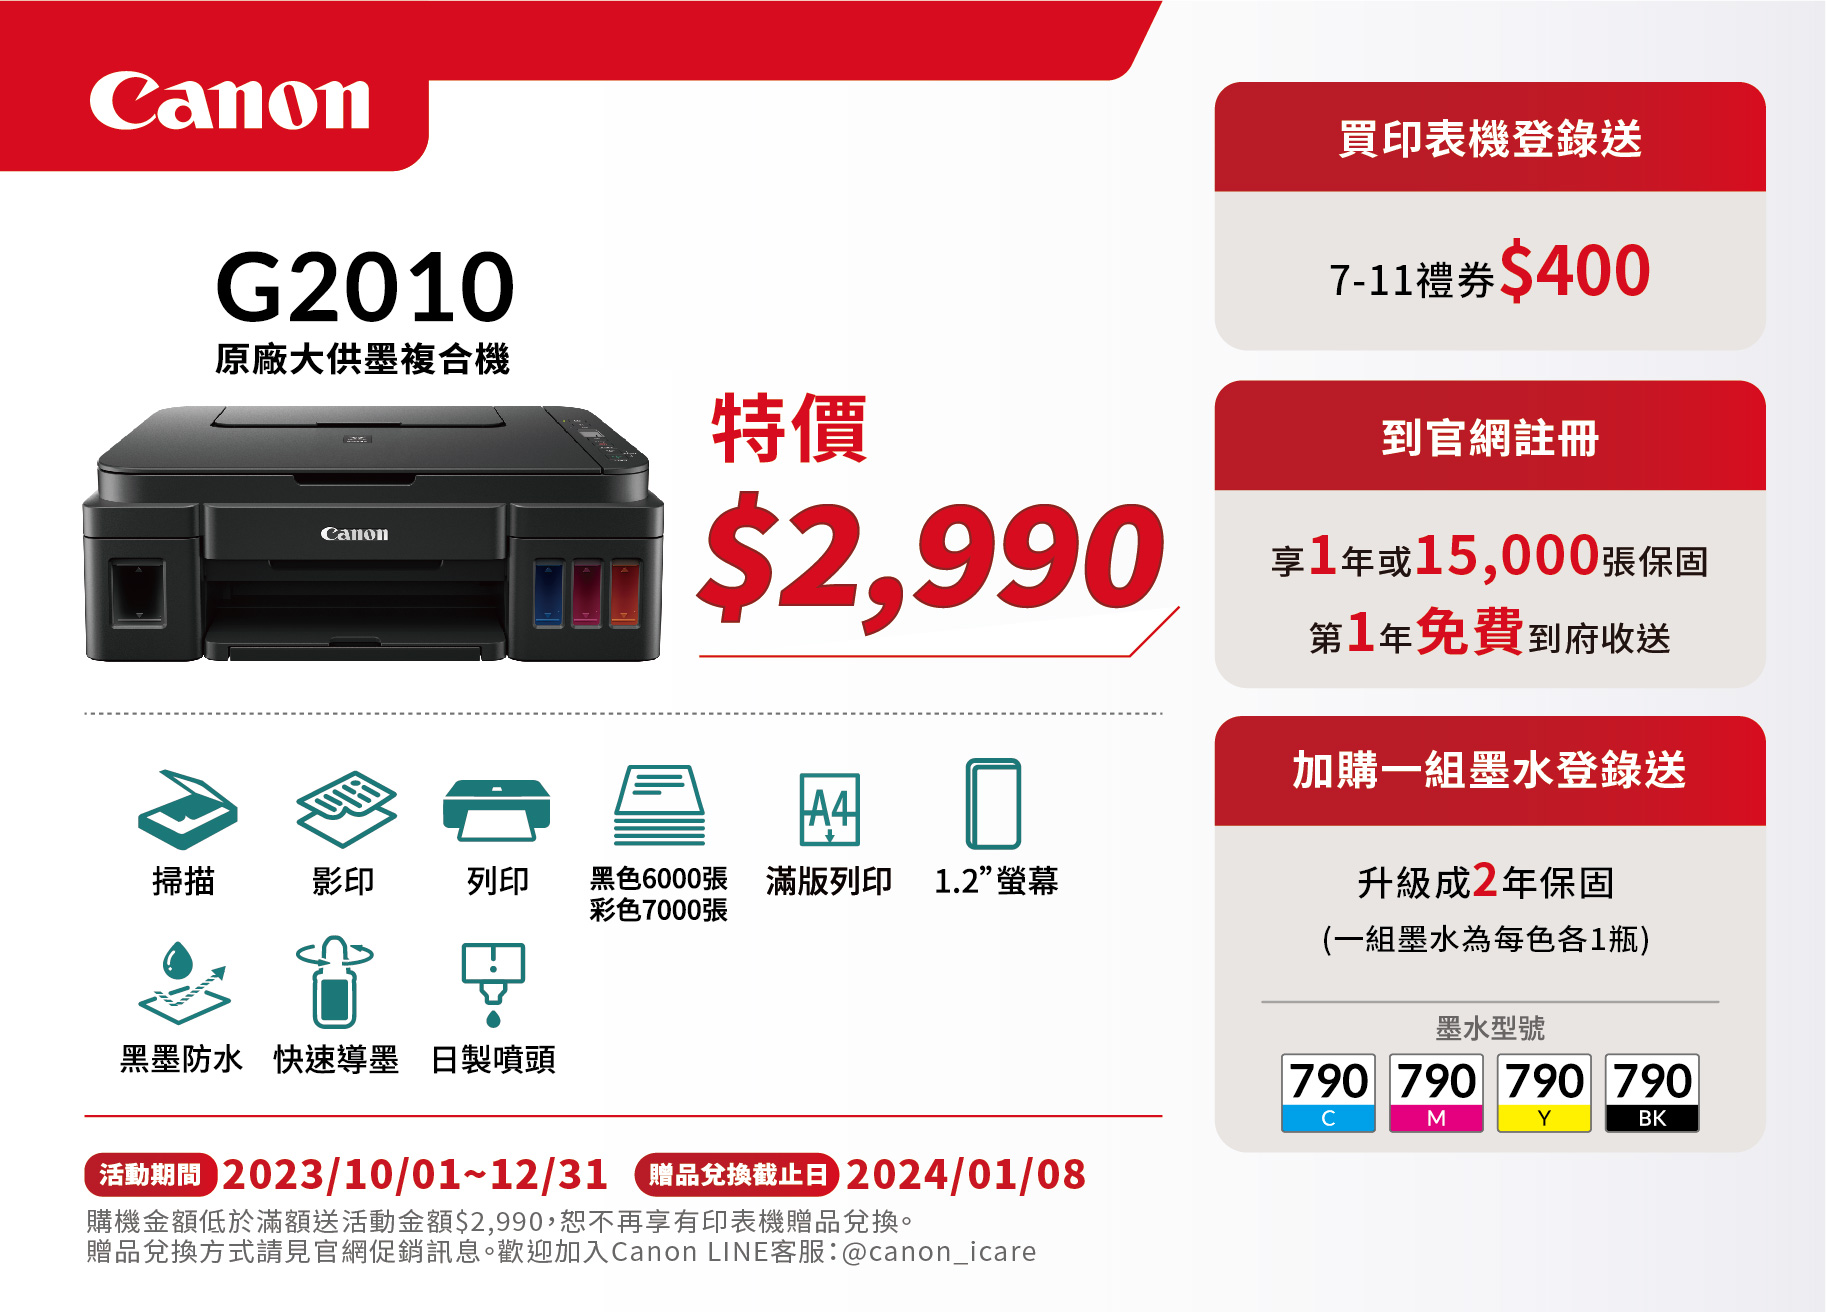 Canon-促銷DM印刷-G2010-01